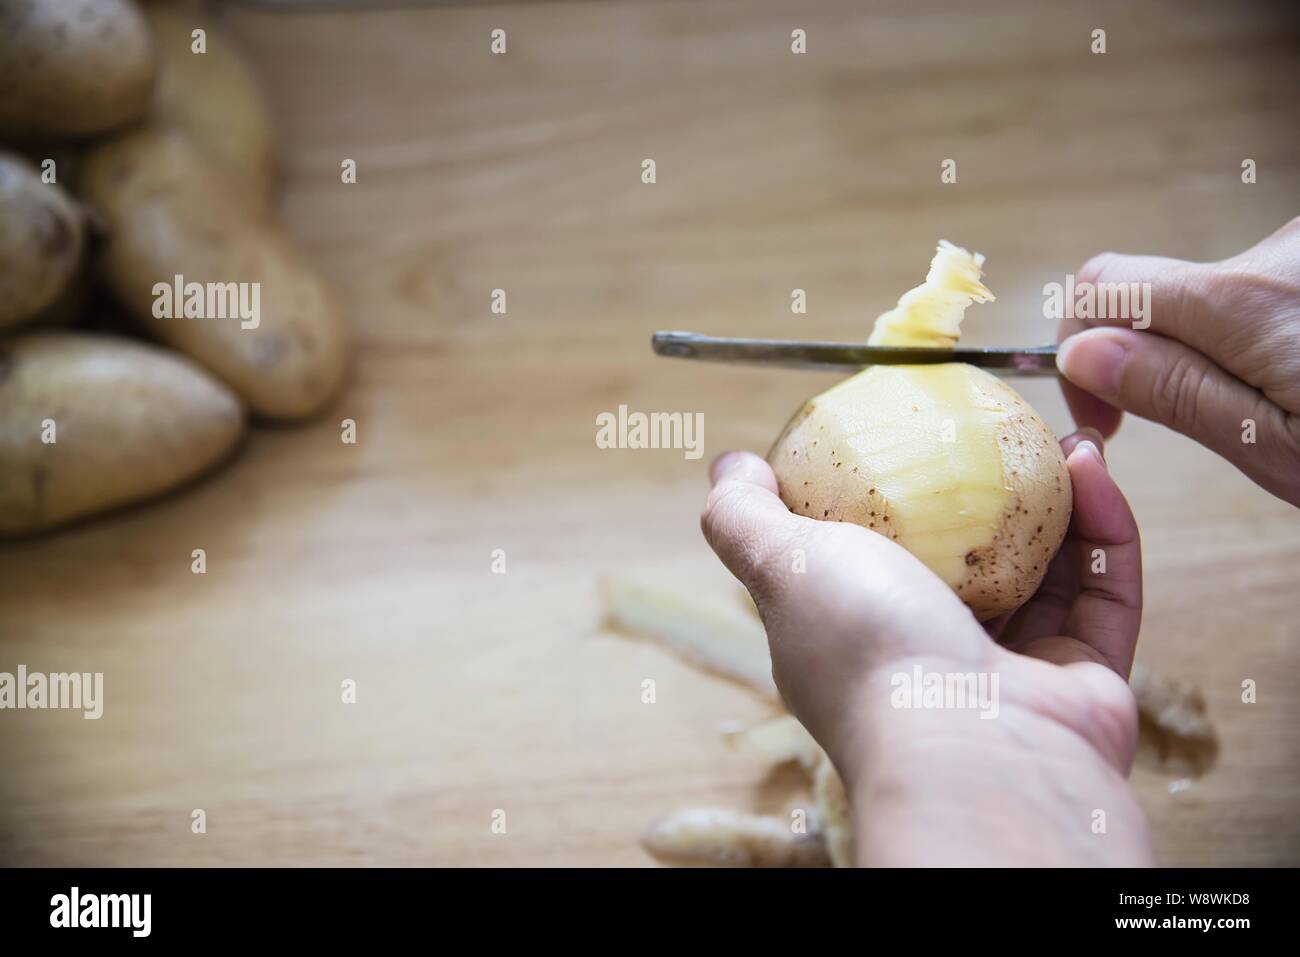 Les gens de pommes de terre fraîches cuisson préparer la nourriture dans la cuisine - concept de cuisine de pommes de terre Banque D'Images